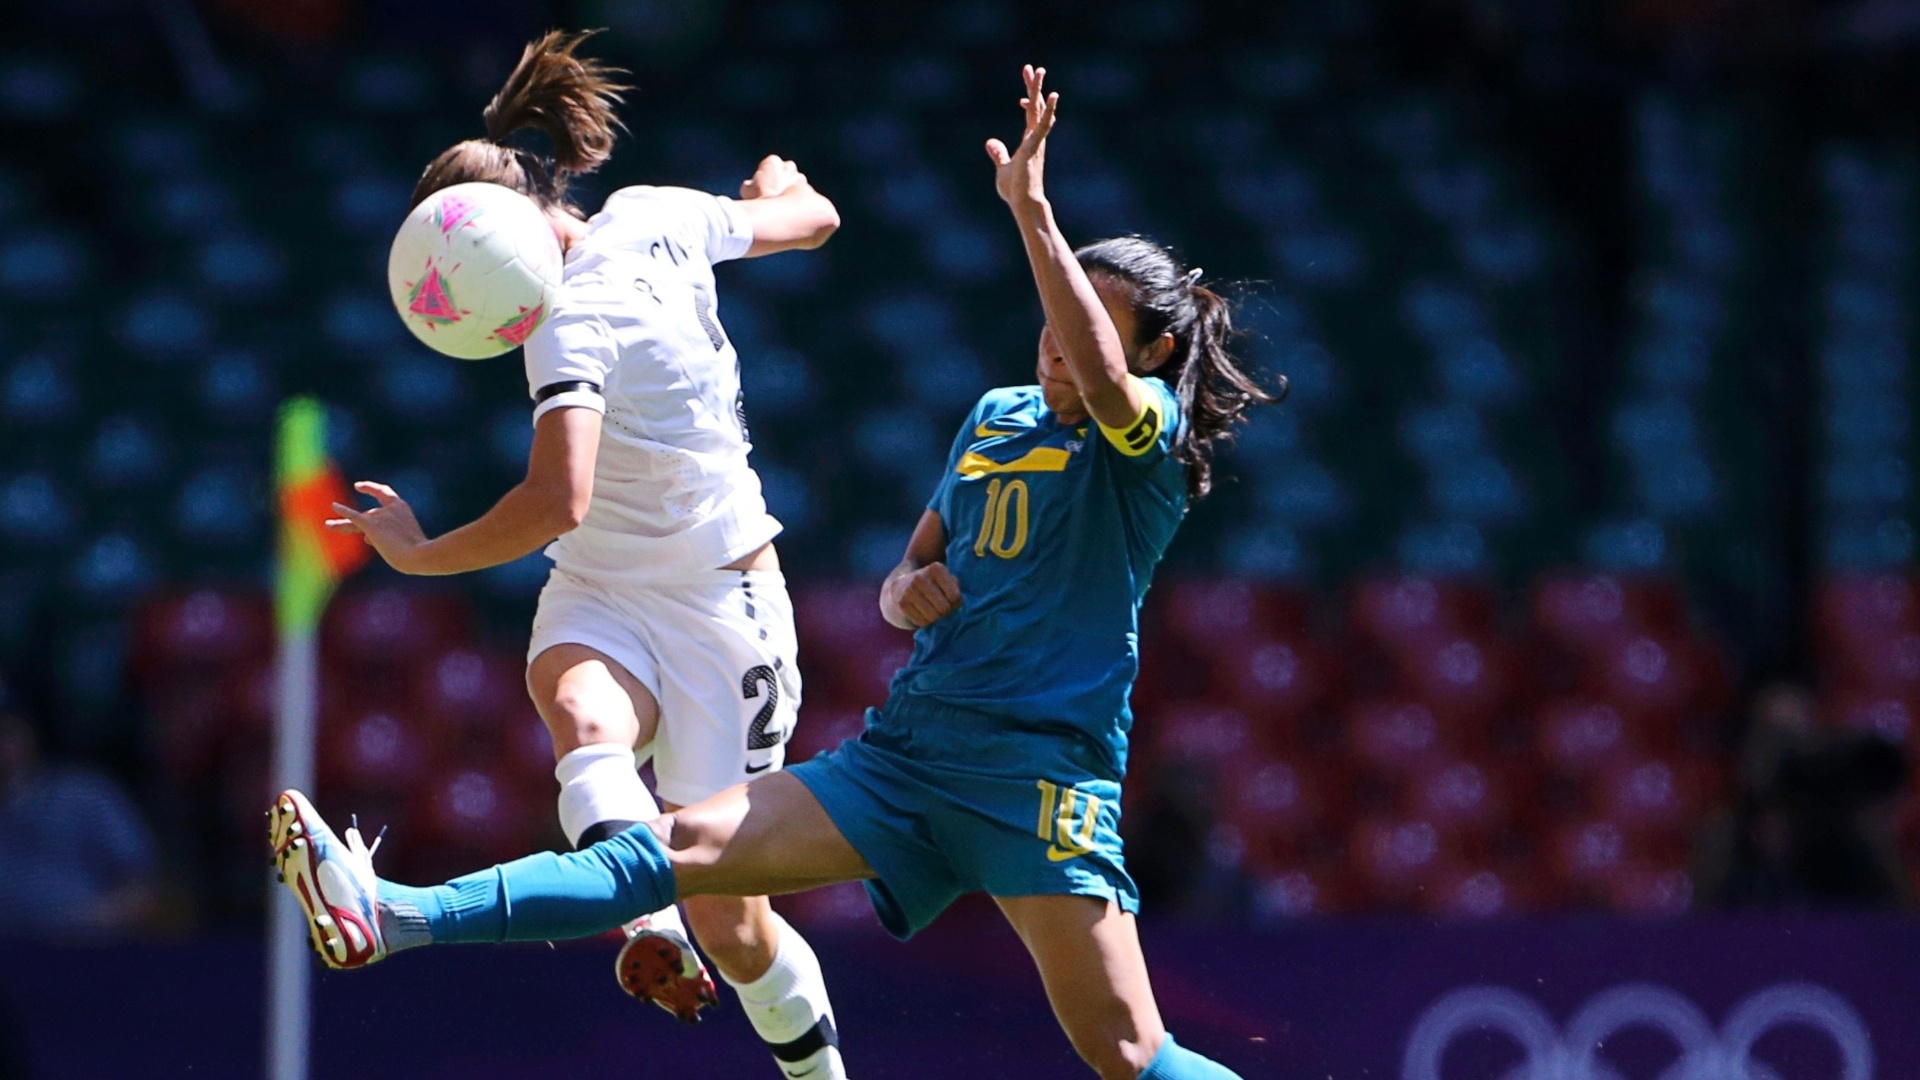 Marta disputa bola com Ria Percival, da Nova Zelândia, no segundo jogo do Brasil na Olimpíada